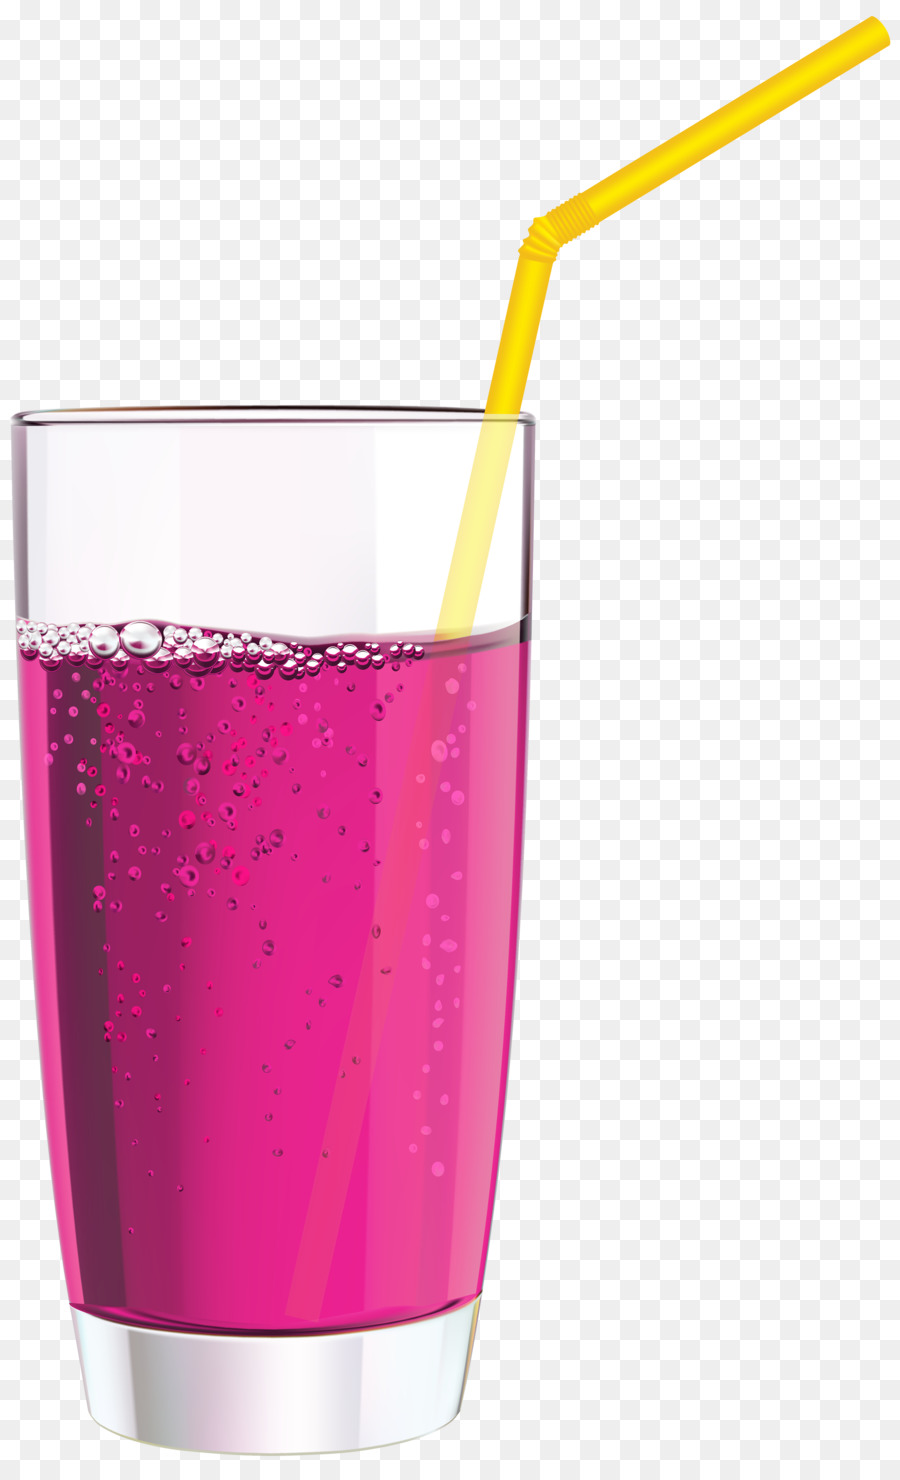 juice clipart pink juice